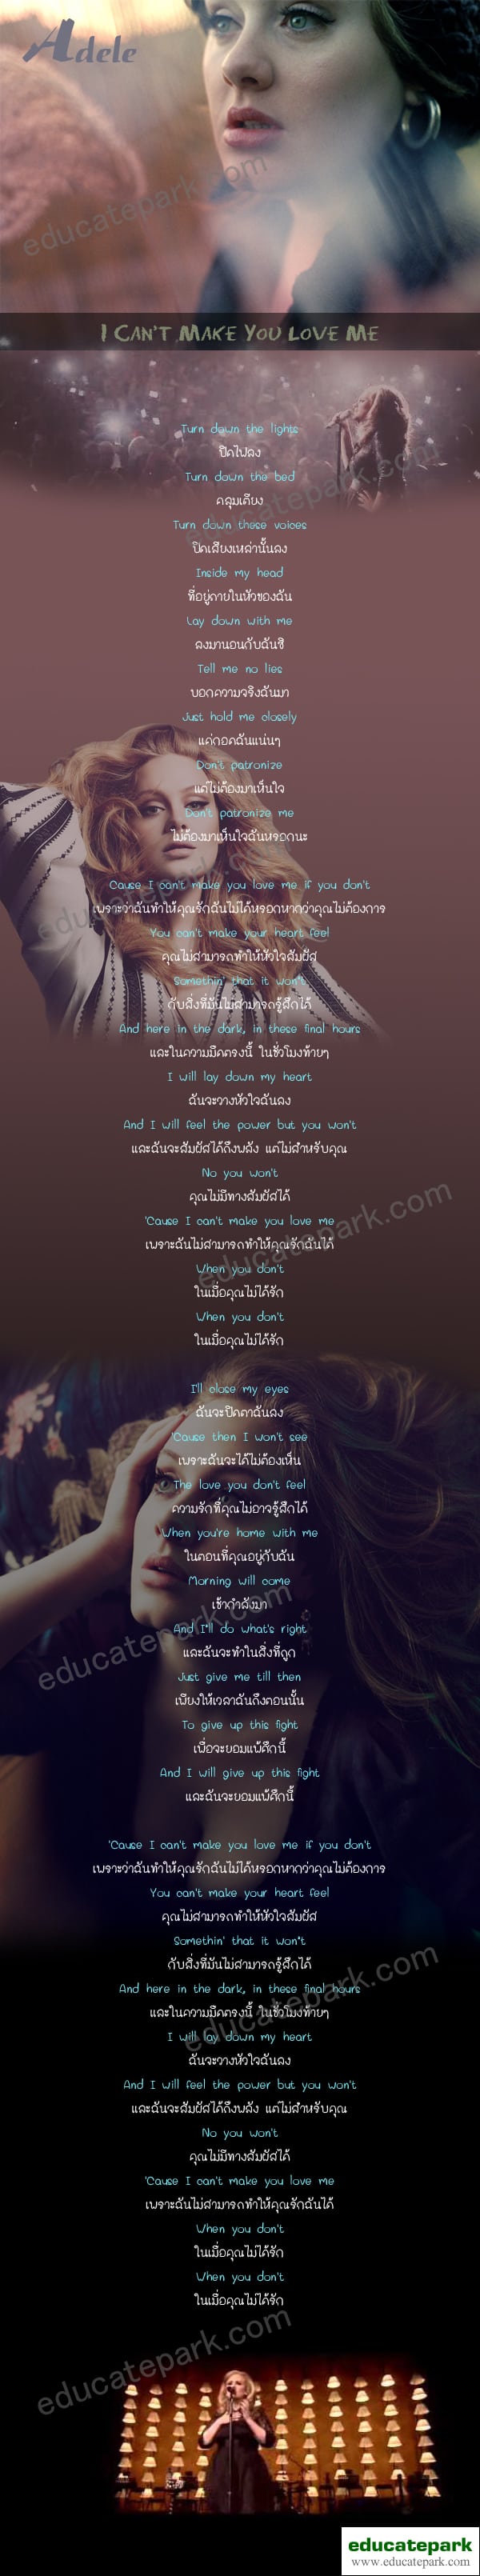 แปลเพลง I CAN'T MAKE YOU LOVE ME - Adele